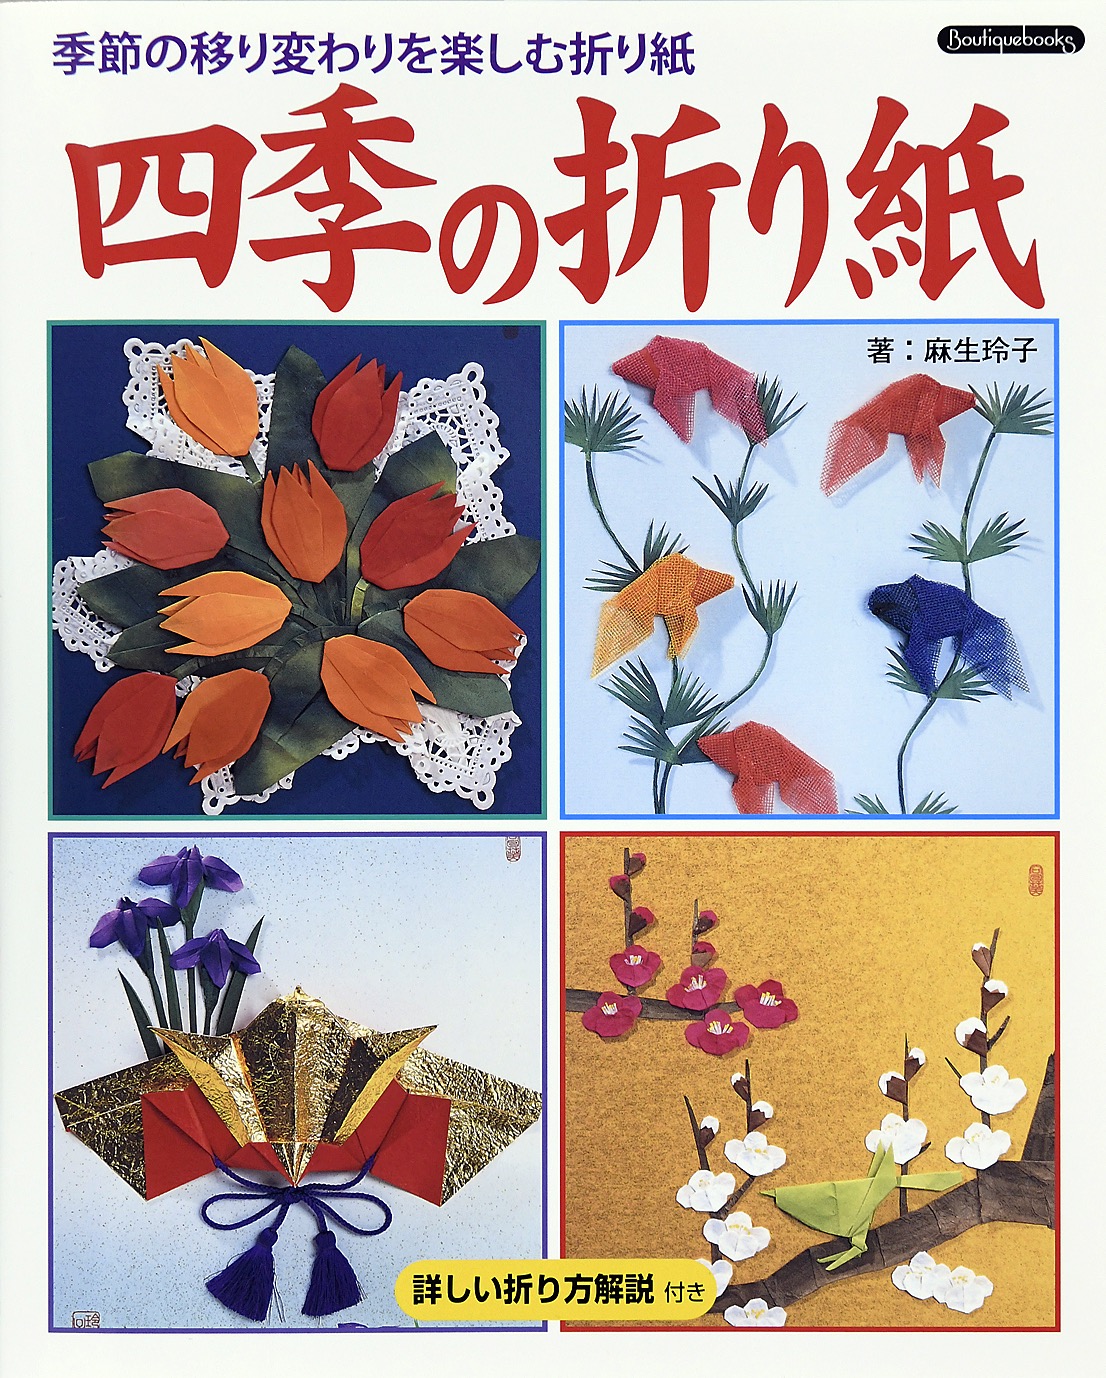 四季の折り紙-季節の移り変わりを楽しむ折り紙 - 麻生玲子 - 漫画